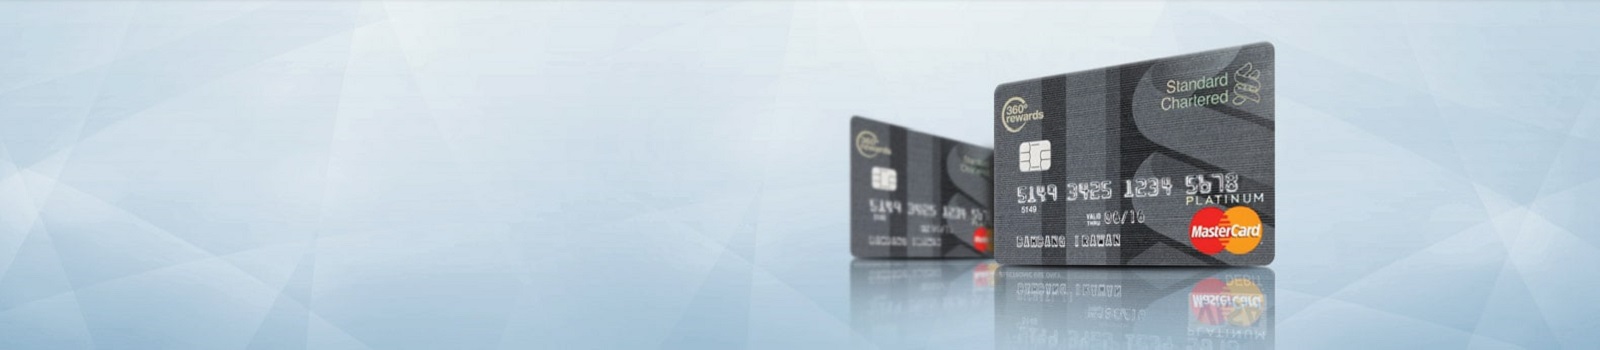 Memberikan informasi detail mengenai kartu kredit Mastercard Platinum